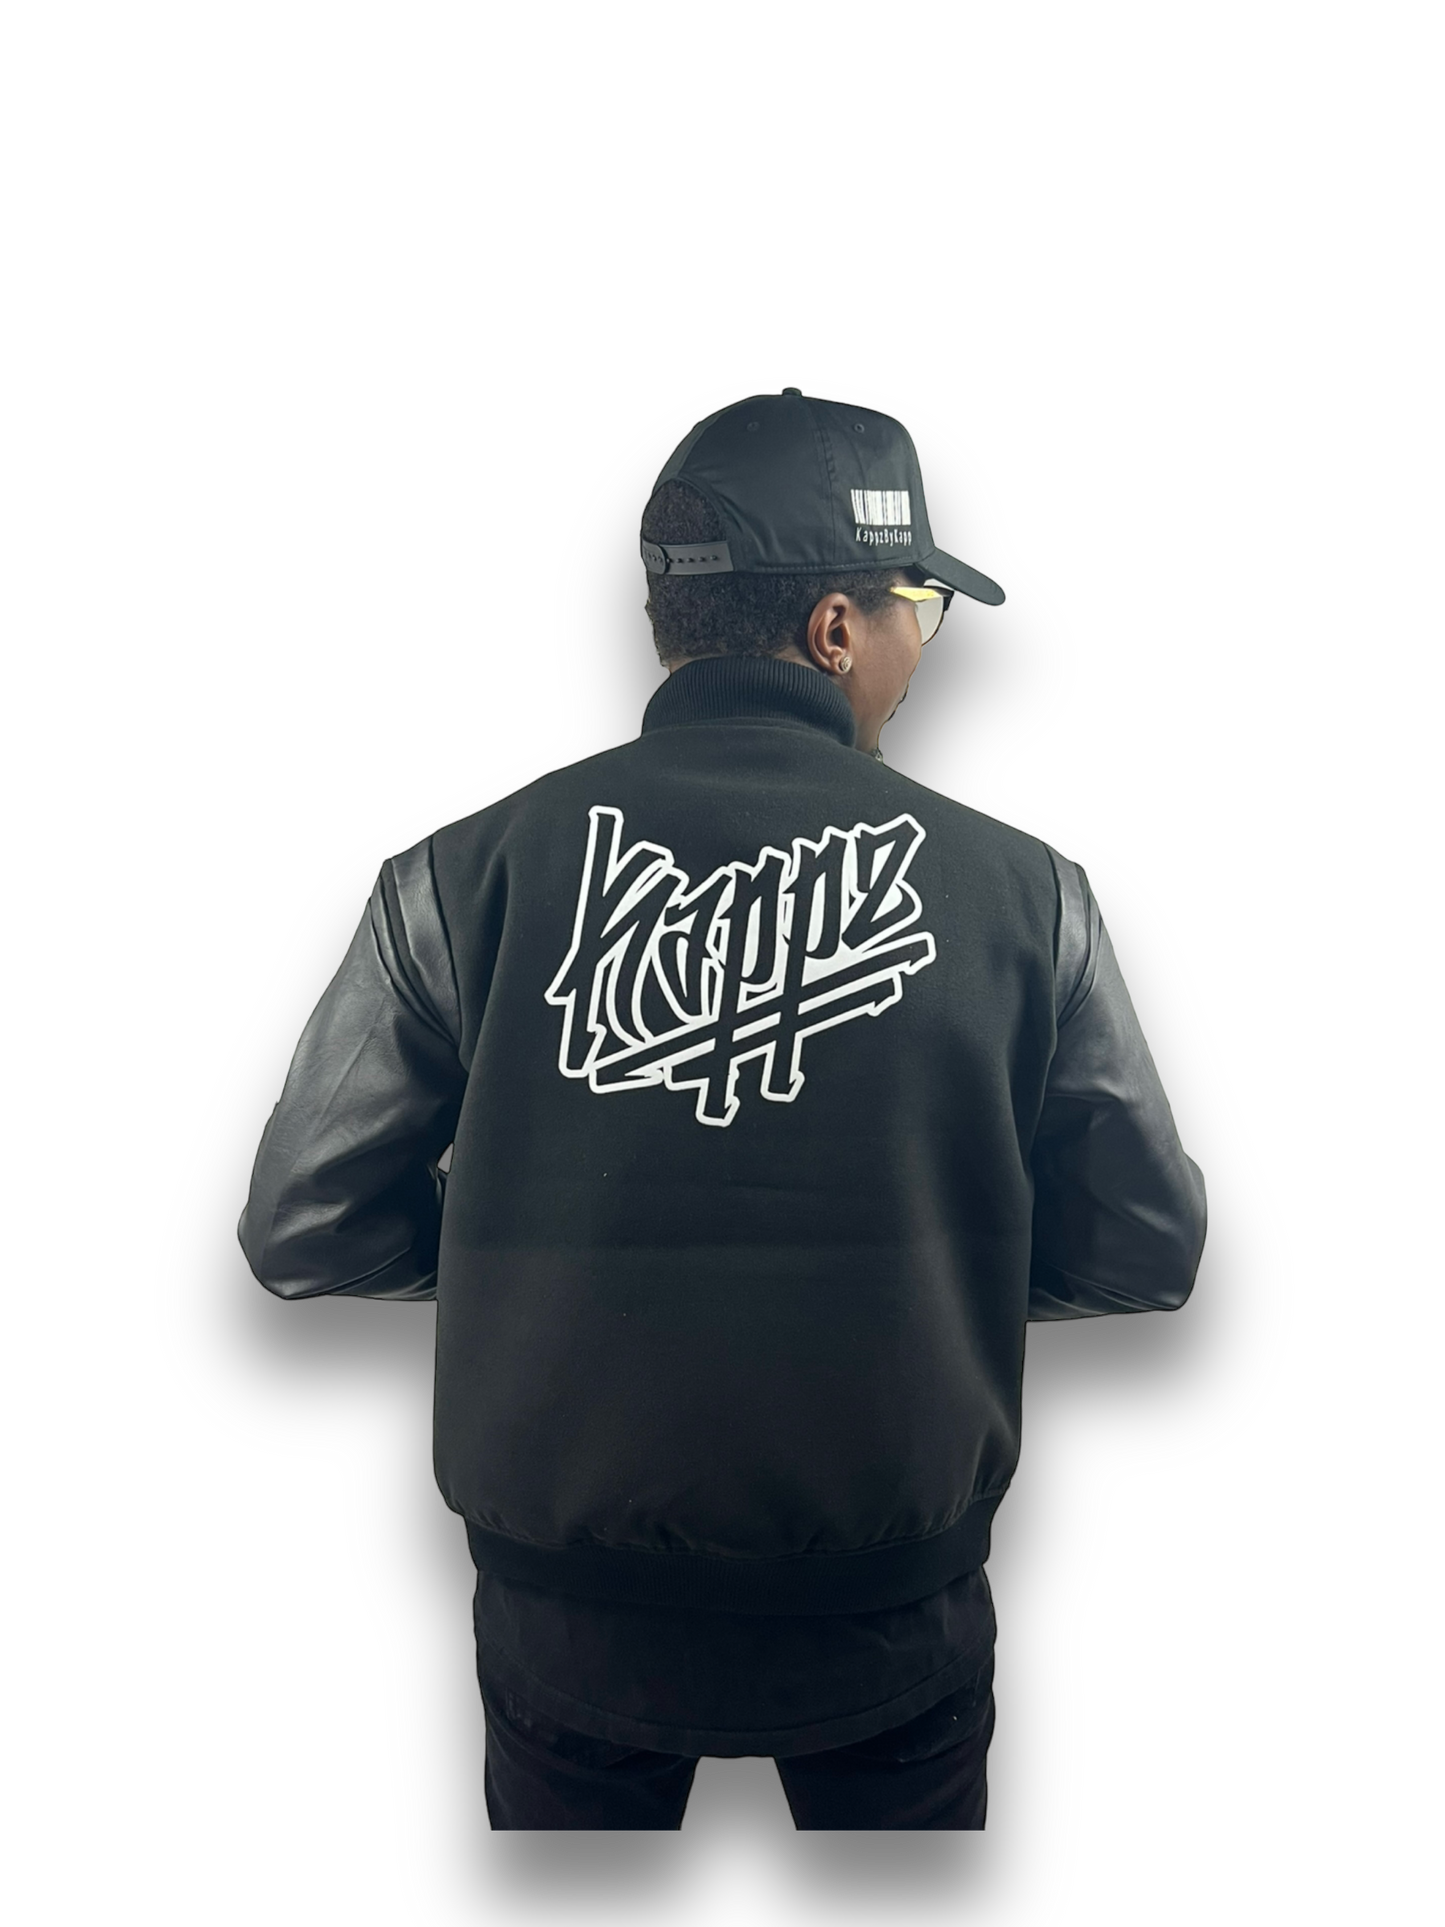 KappGodz “Culture” Kappz Varsity Jacket - Black/Black - KappGodz Apparel